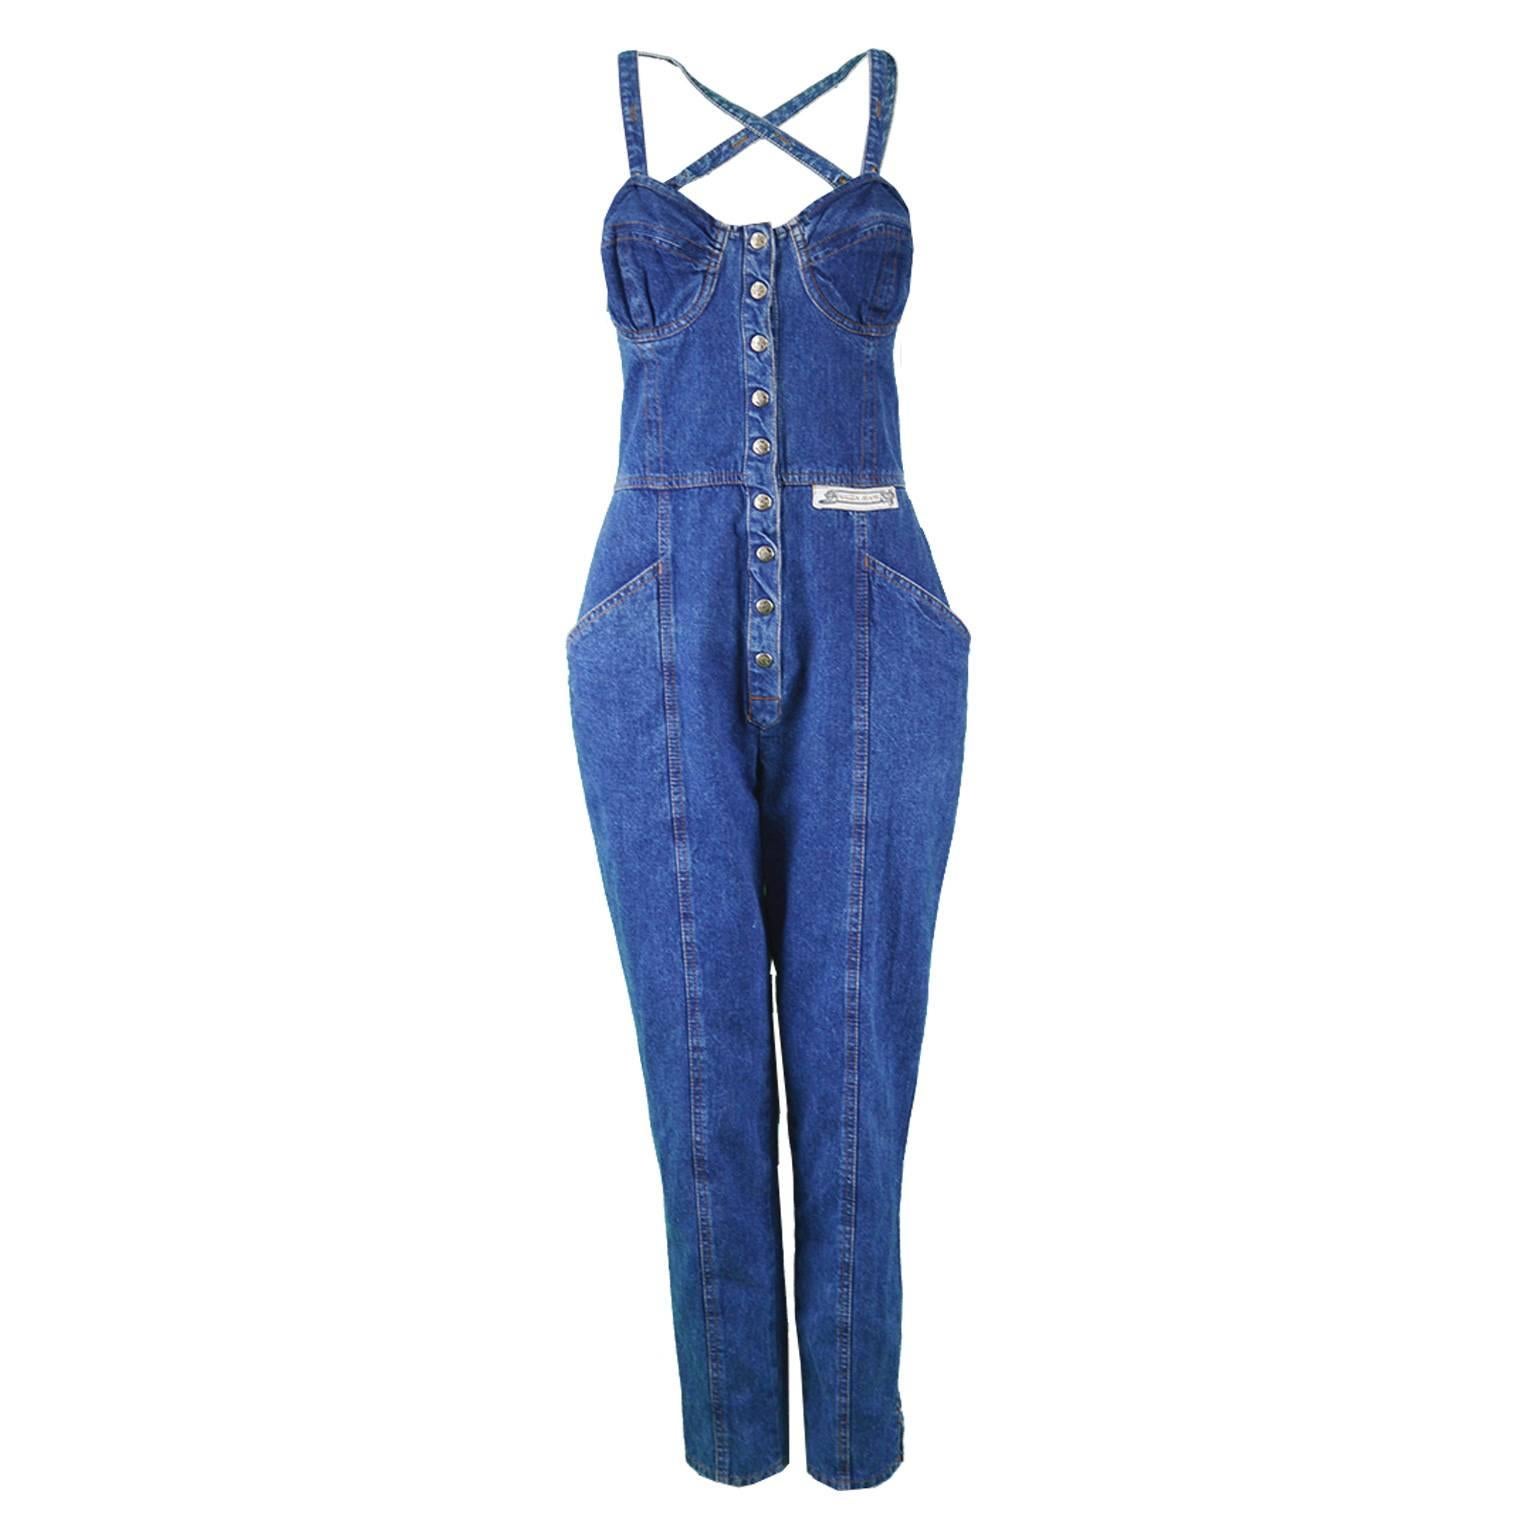 Krizia Jeans Vintage Blue Underwired Cross Back Denim Jumpsuit, 1990s